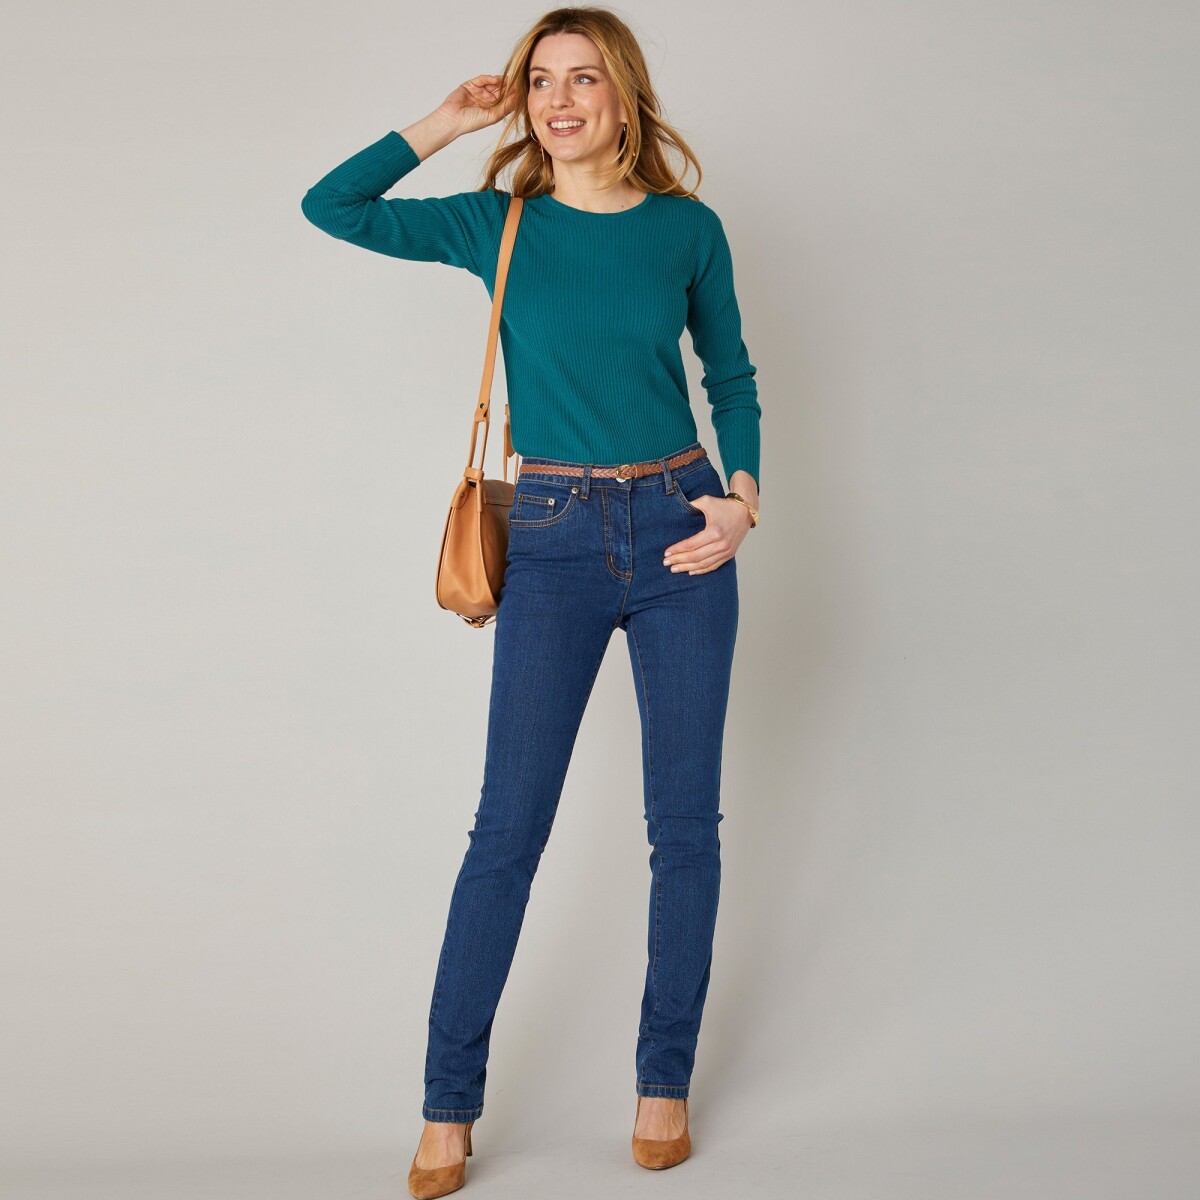 Blancheporte Strečové rovné džíny, střední výška postavy tmavě modrá 52